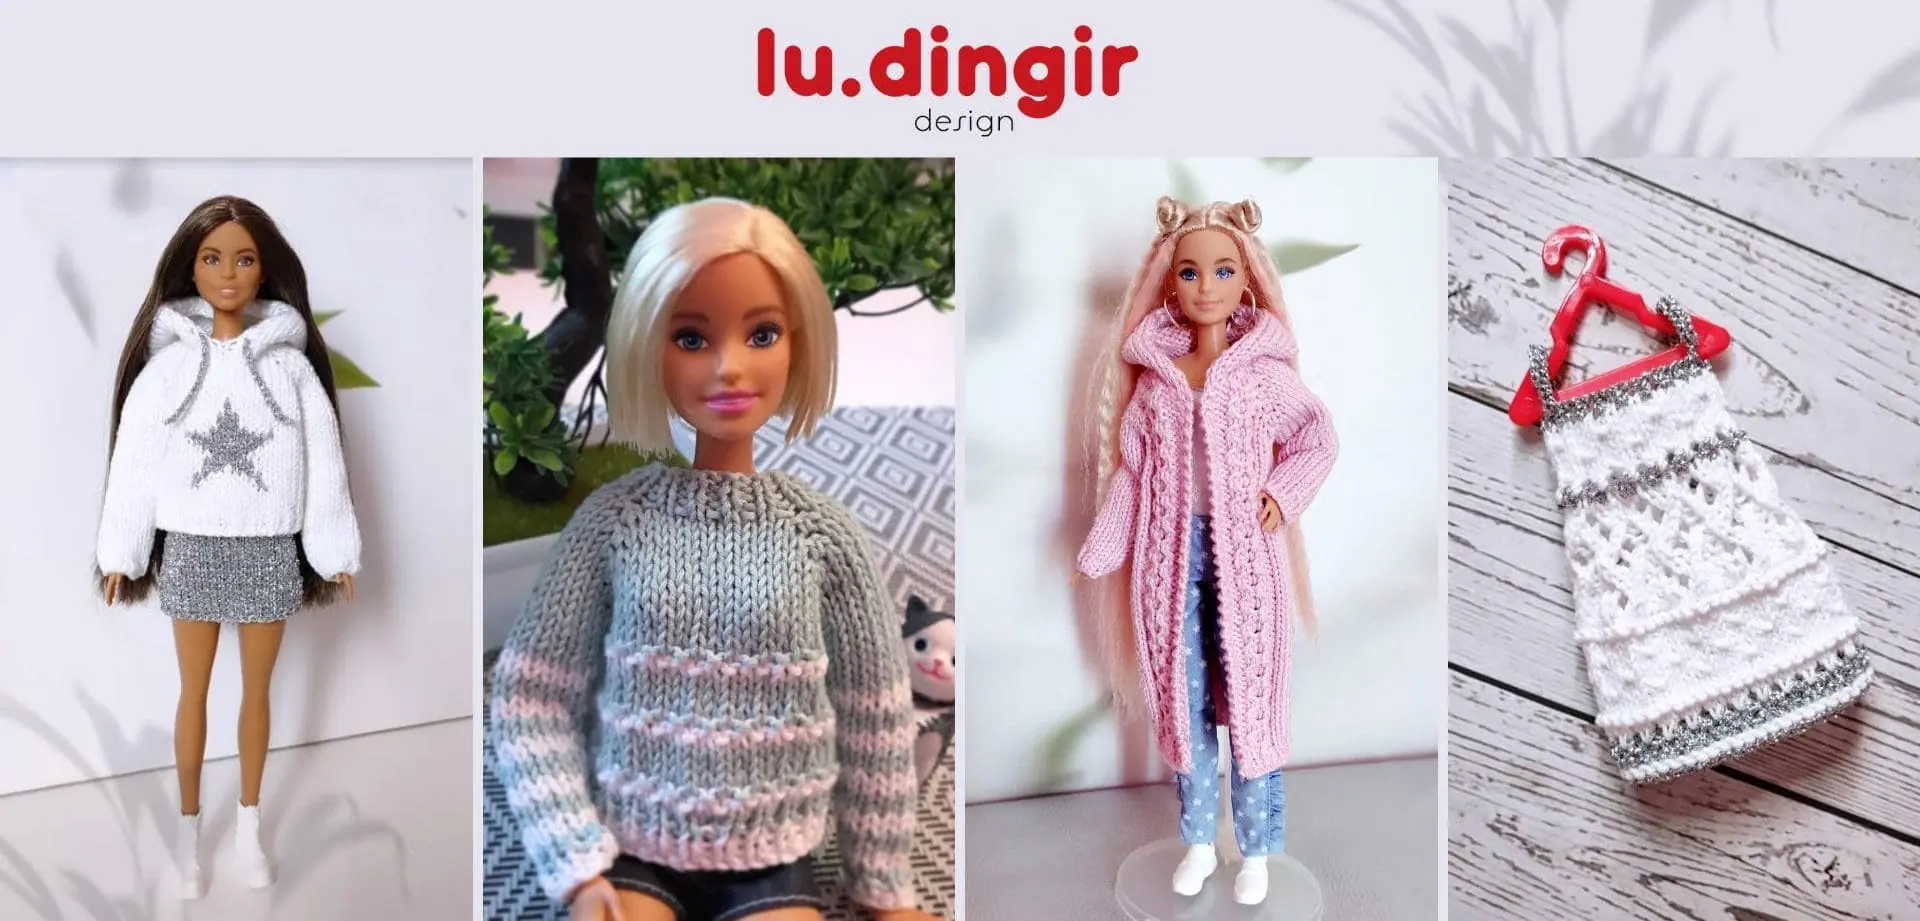 lu.dingir knitting patterns for dolls